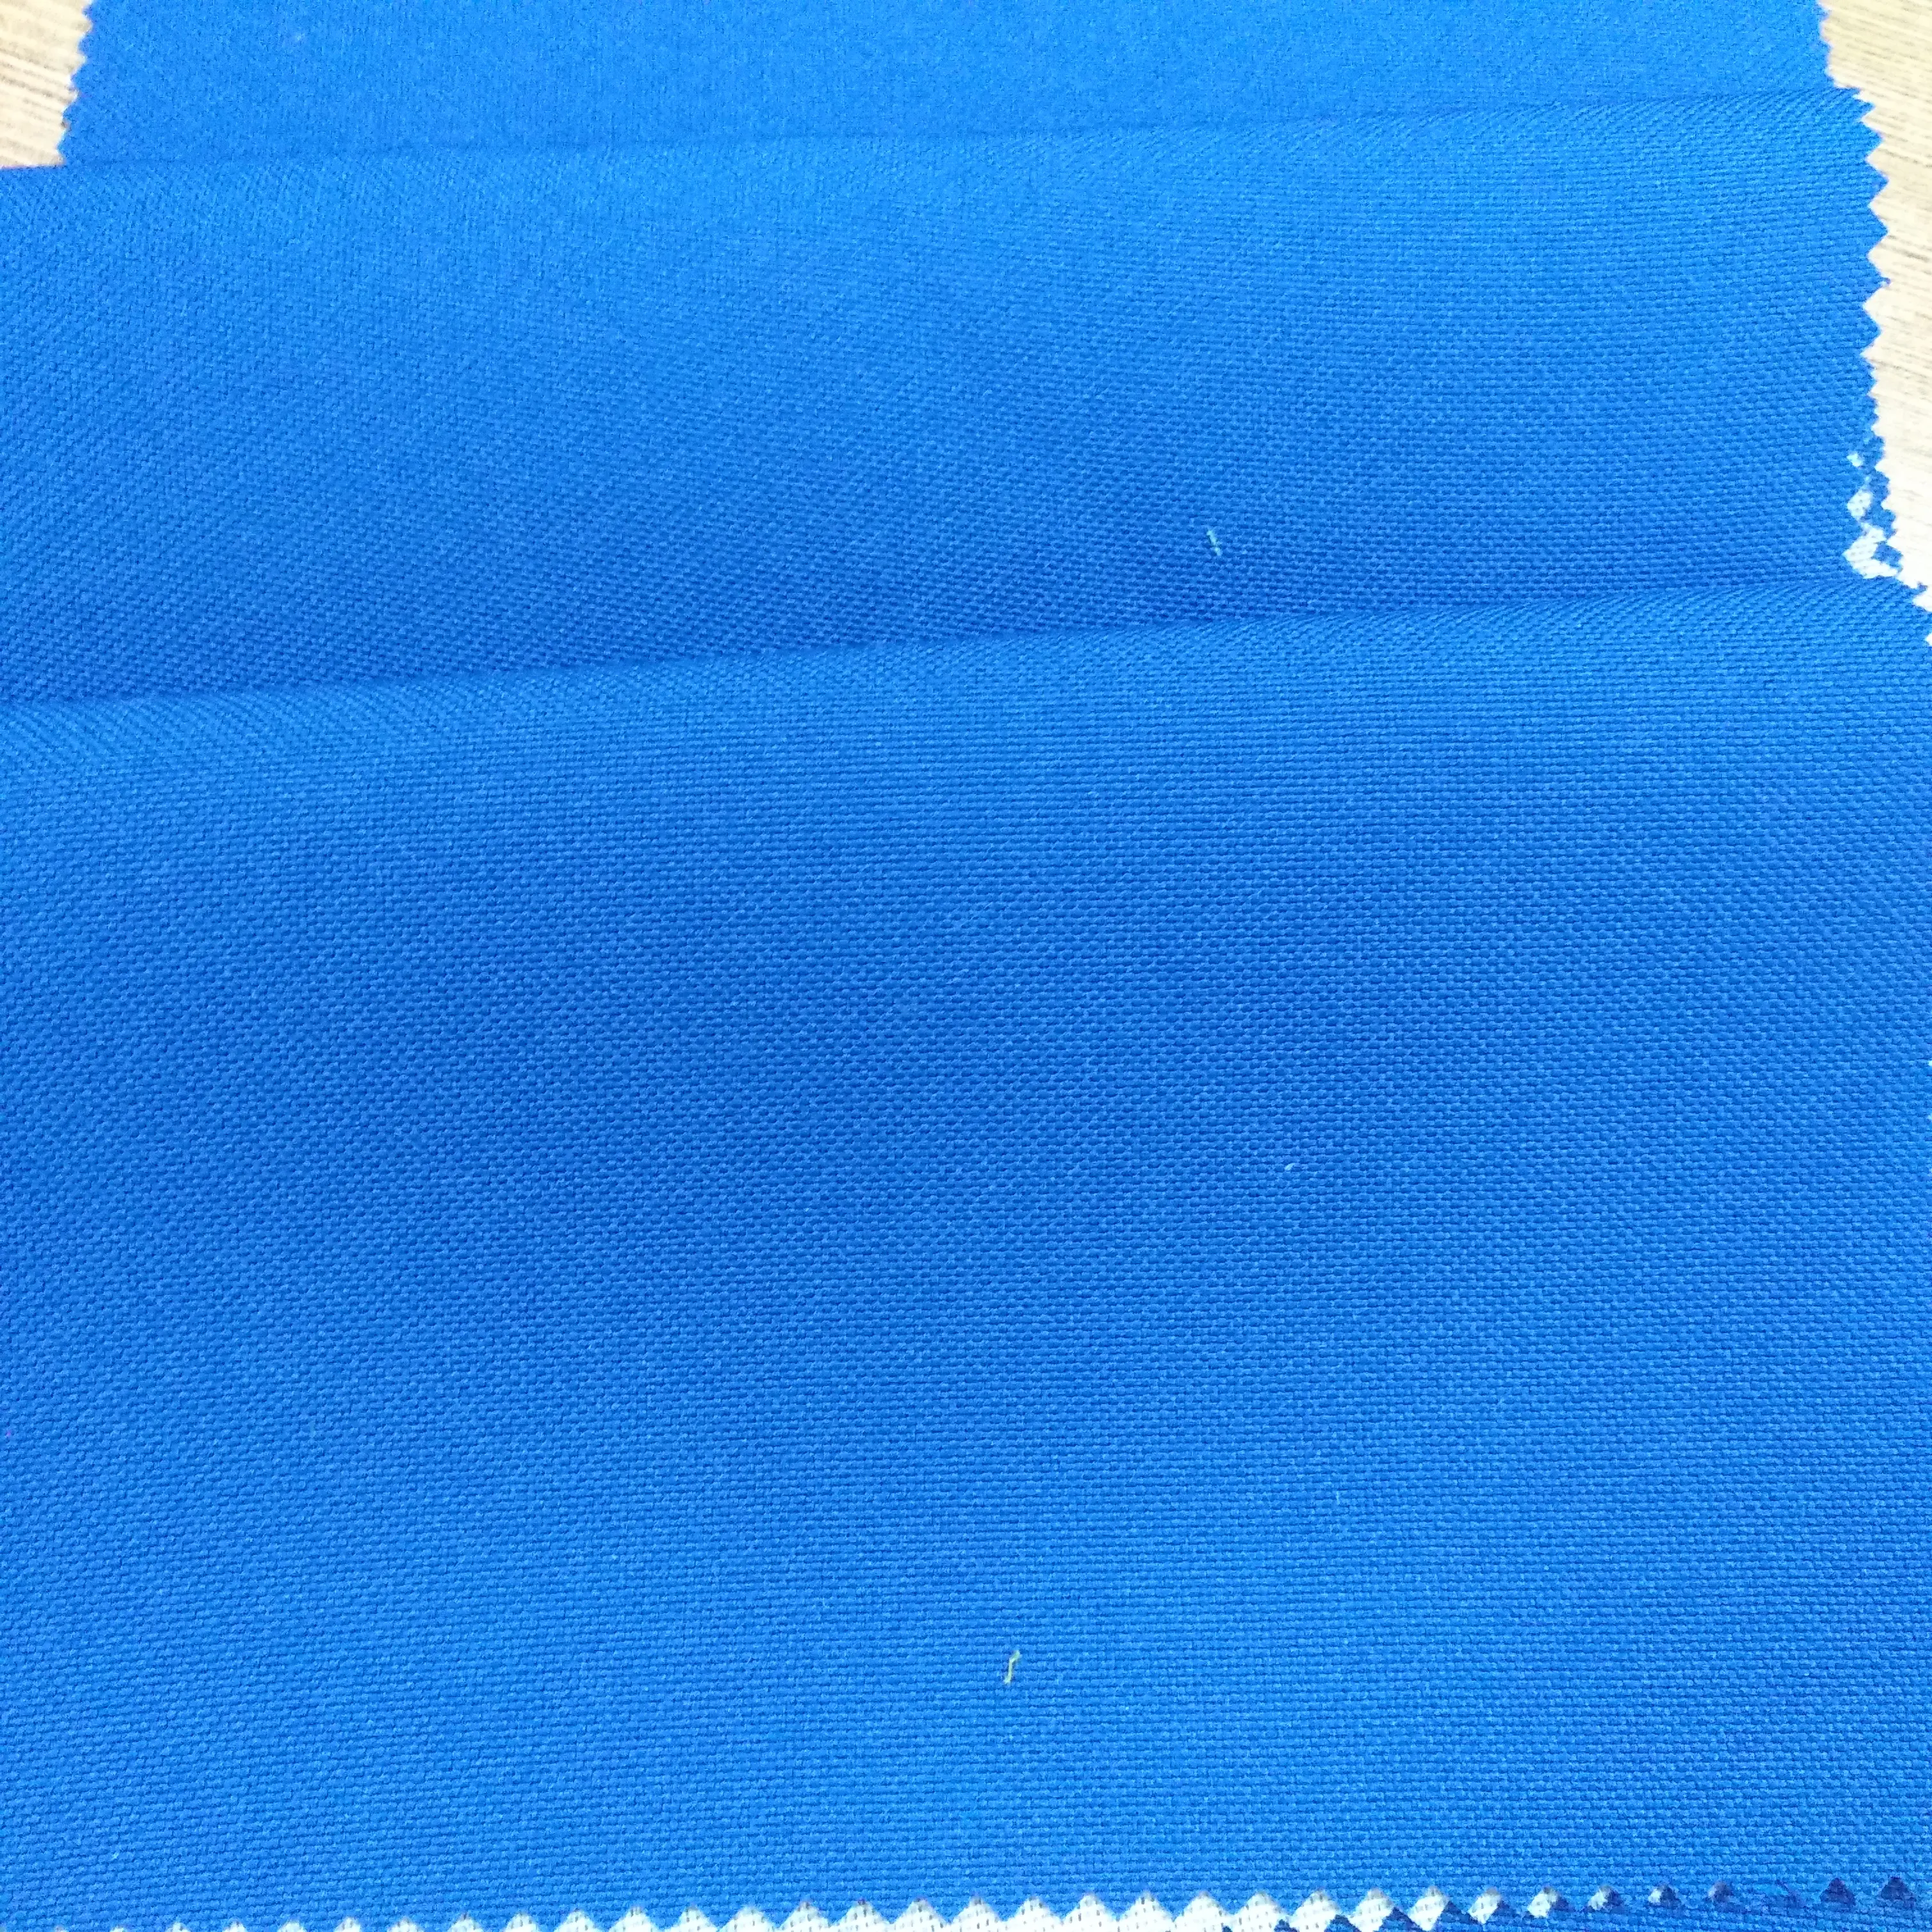 100% Polyester Chất Liệu Chống Thấm Chống UV Đồng Bằng Oxford Upholstery Ô Tô Vải